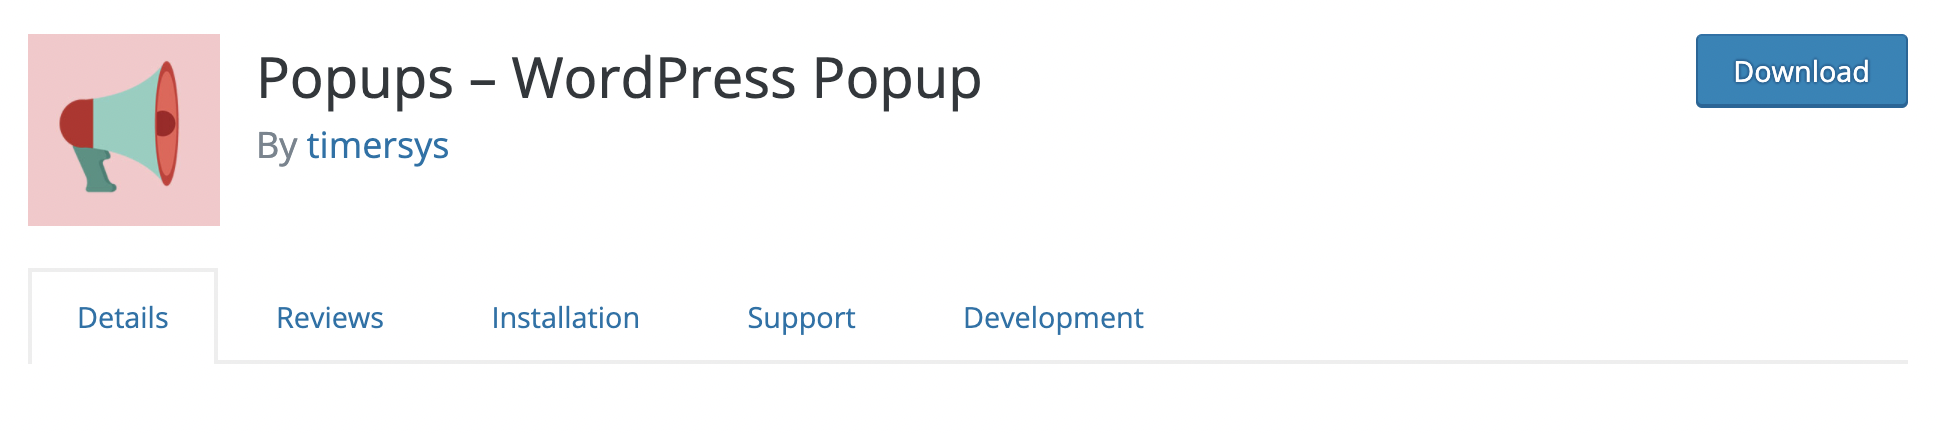 Popups – WordPress Popup